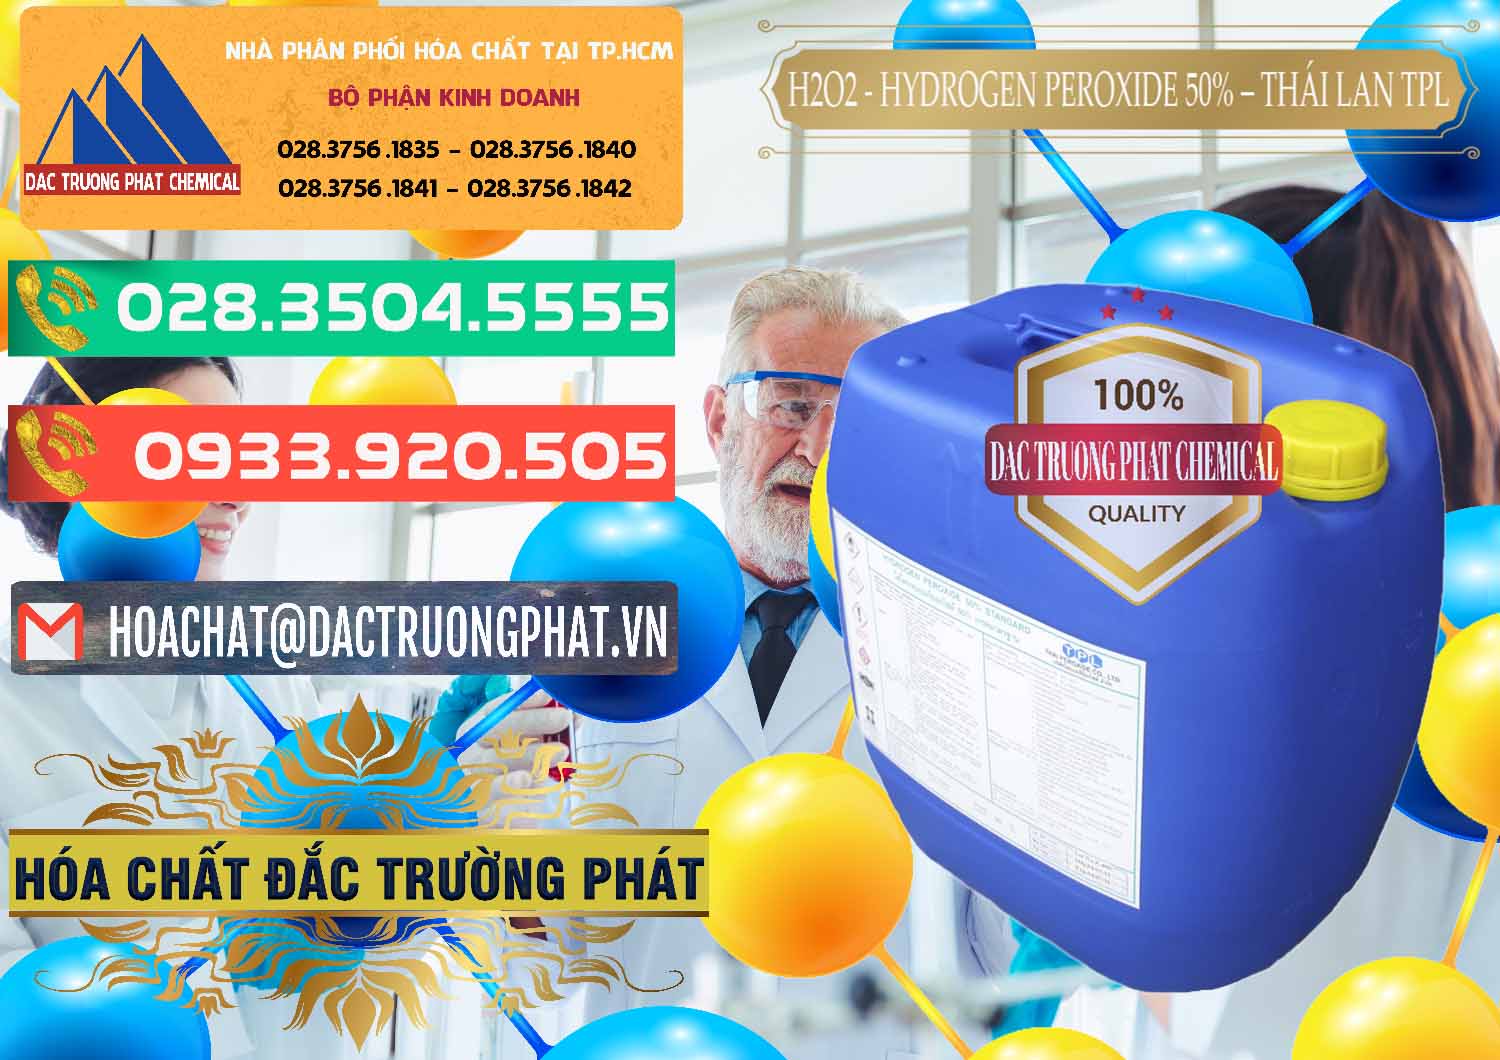 Đơn vị chuyên bán và cung ứng H2O2 - Hydrogen Peroxide 50% Thái Lan TPL - 0076 - Cty chuyên nhập khẩu & phân phối hóa chất tại TP.HCM - congtyhoachat.com.vn